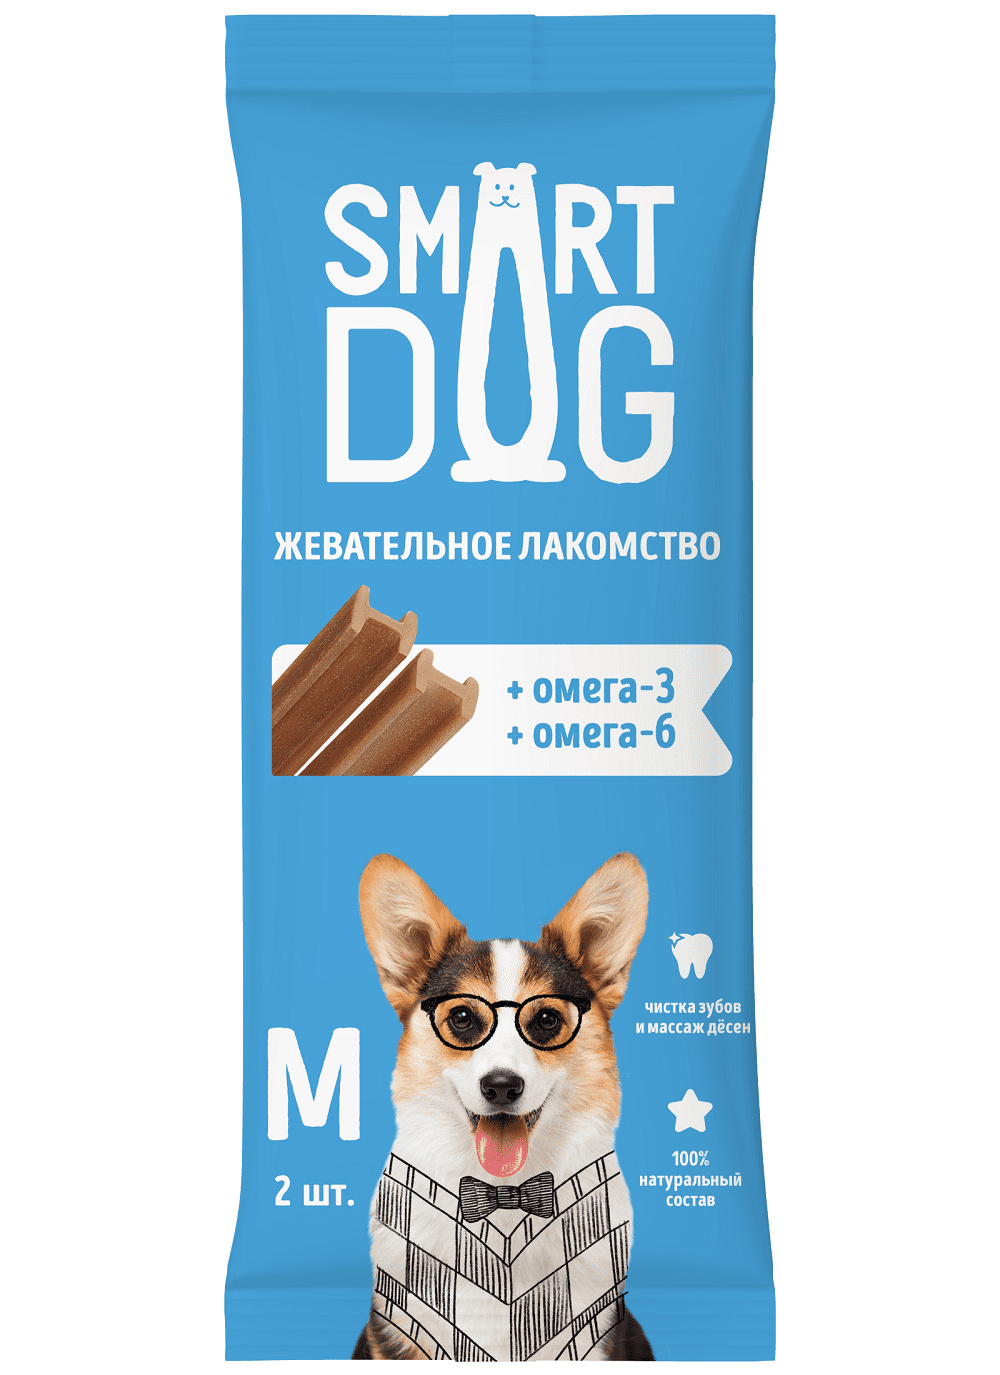 Smart Dog лакомства Smart Dog лакомства жевательное лакомство с омега-3 и -6 для собак и щенков (36 г) smart dog лакомства smart dog лакомства жевательное лакомство с витаминами и минералами для собак и щенков s